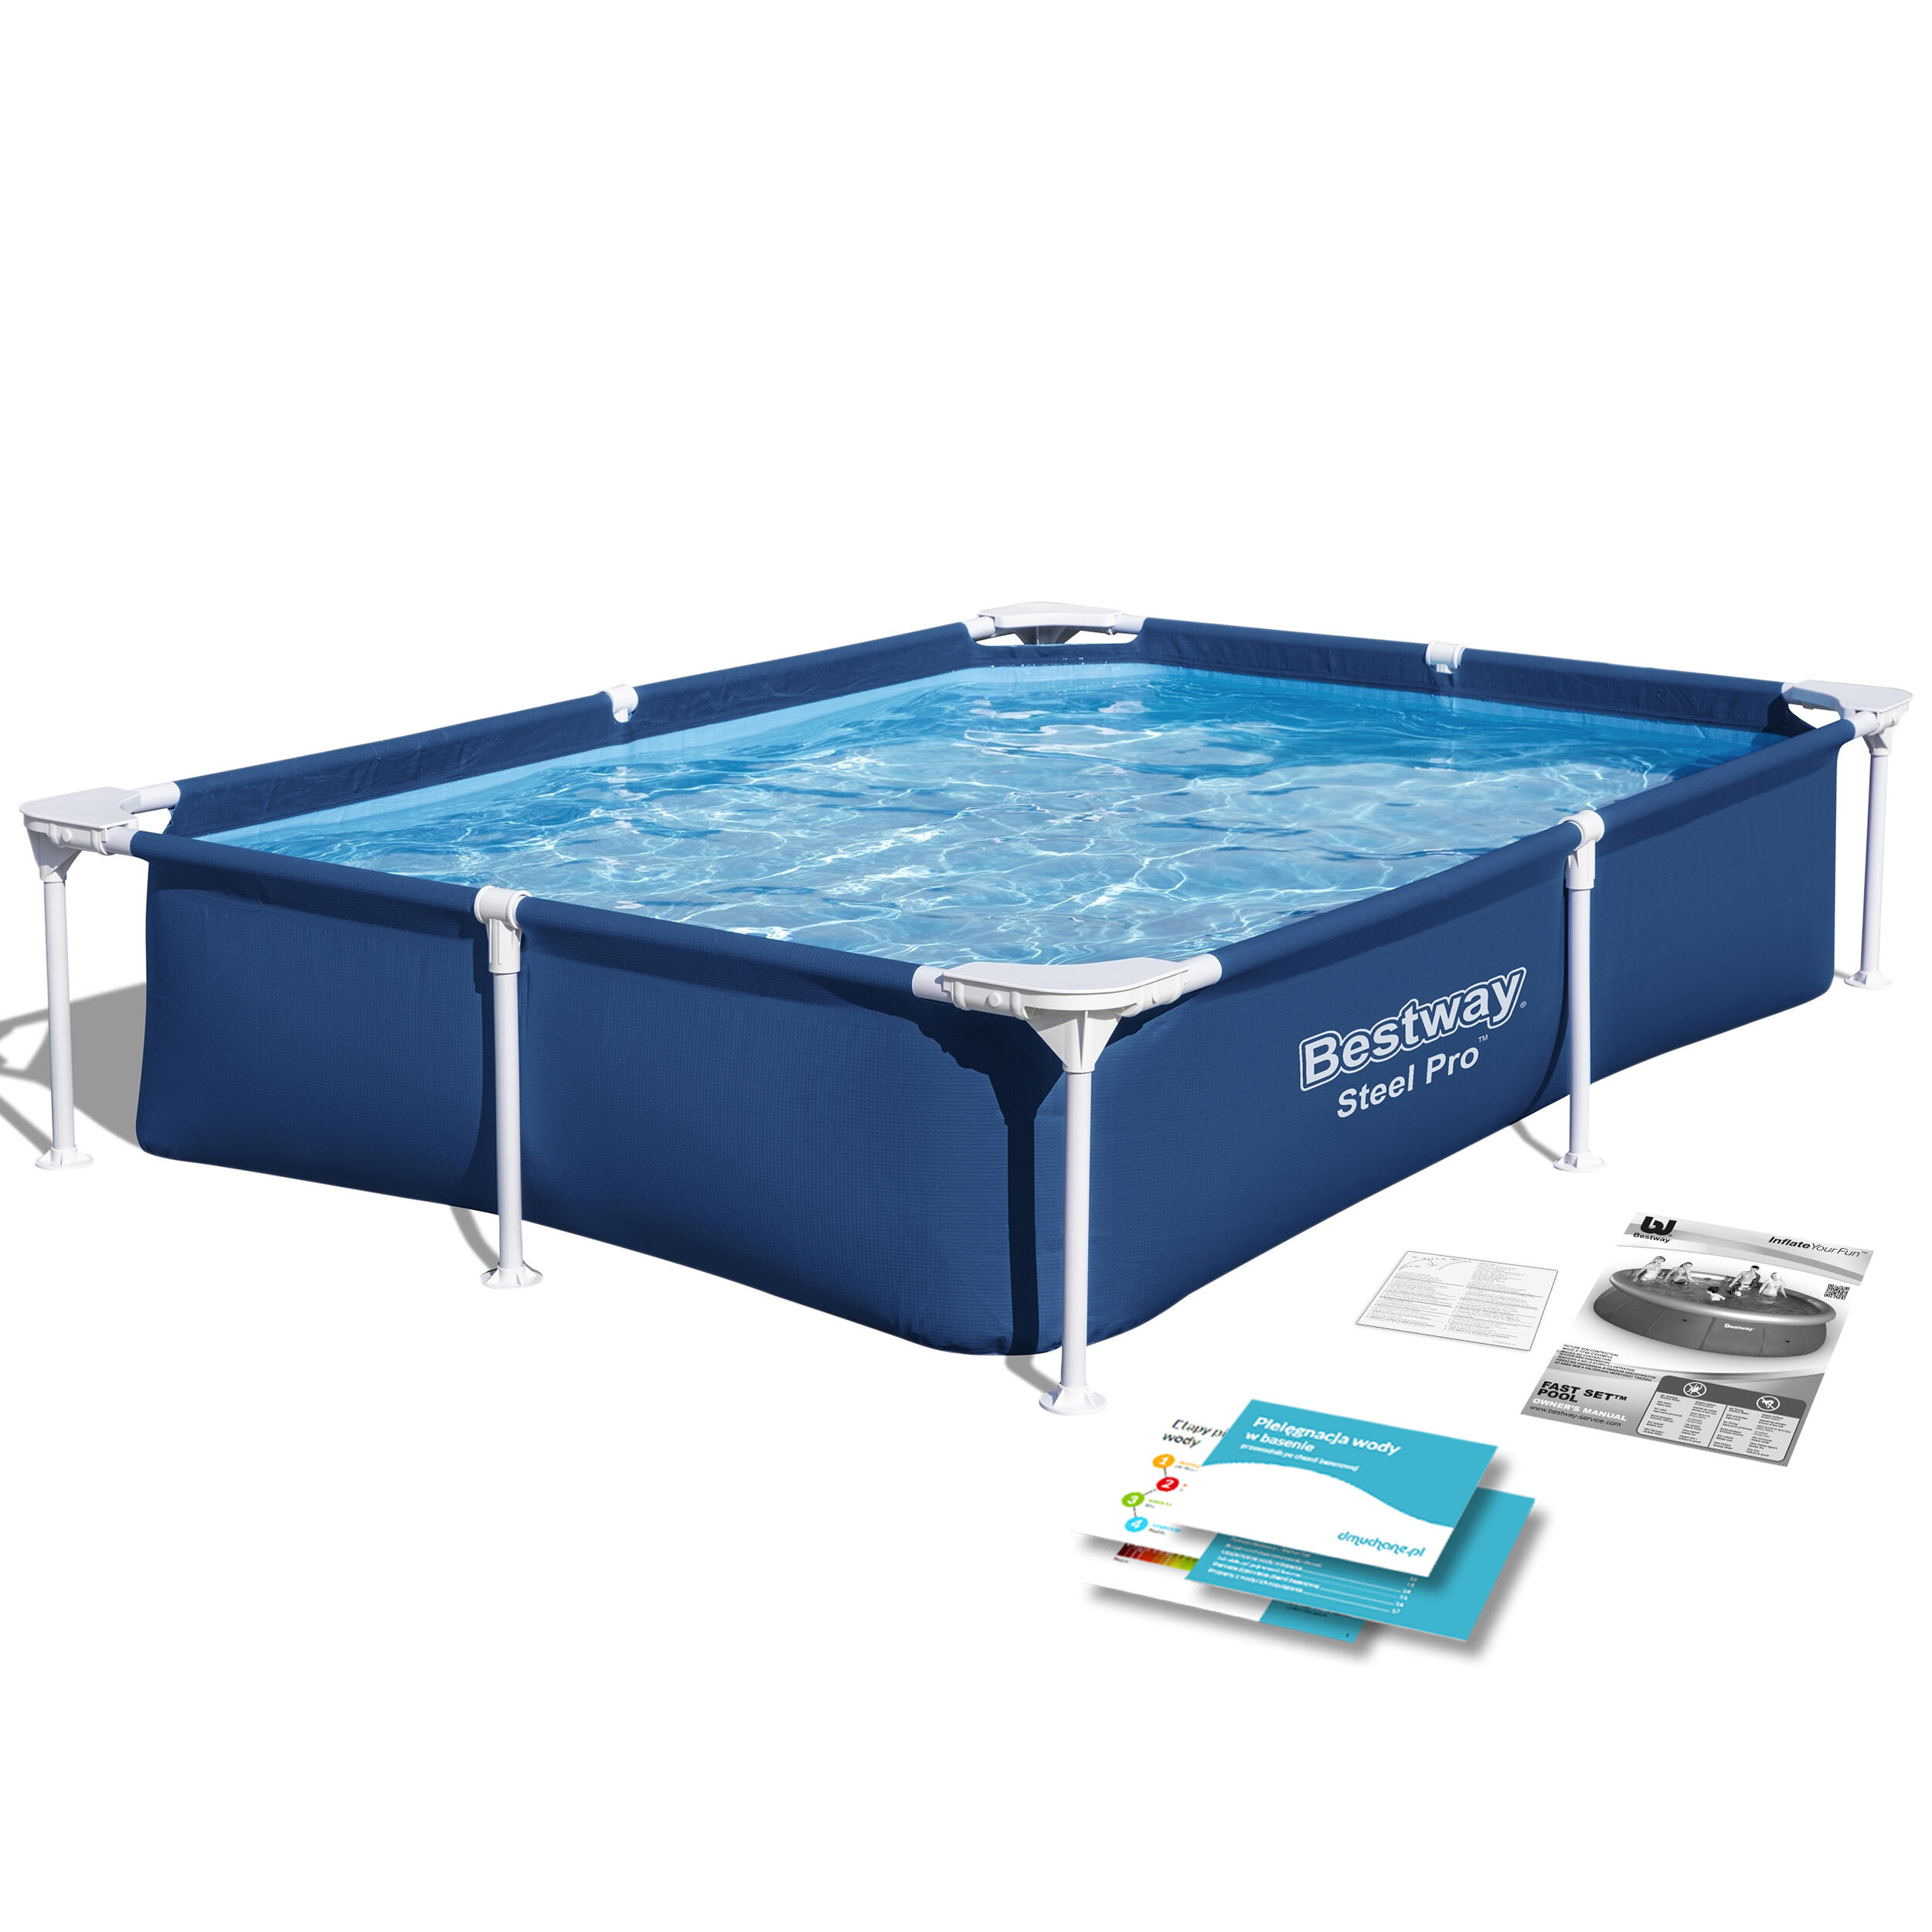 BESTWAY Bestway Steel Pro Rectangular Pool set | Swimming Pool, Blue